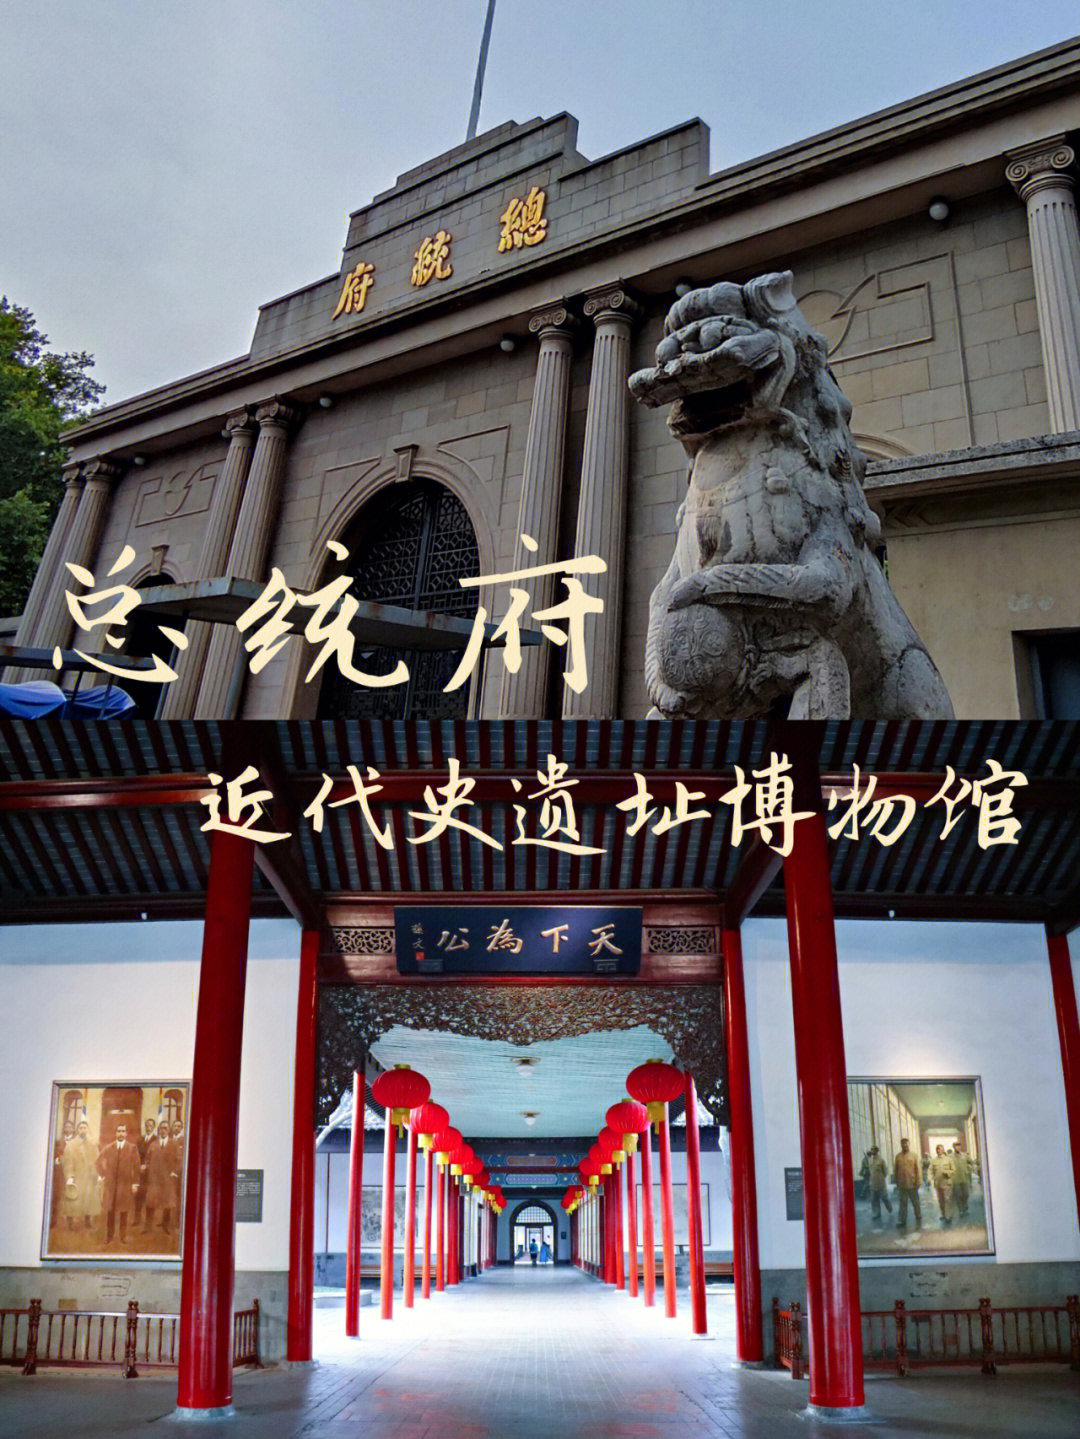 99南京中国近代史遗址博物馆(总统府),迄今已有600多年历史